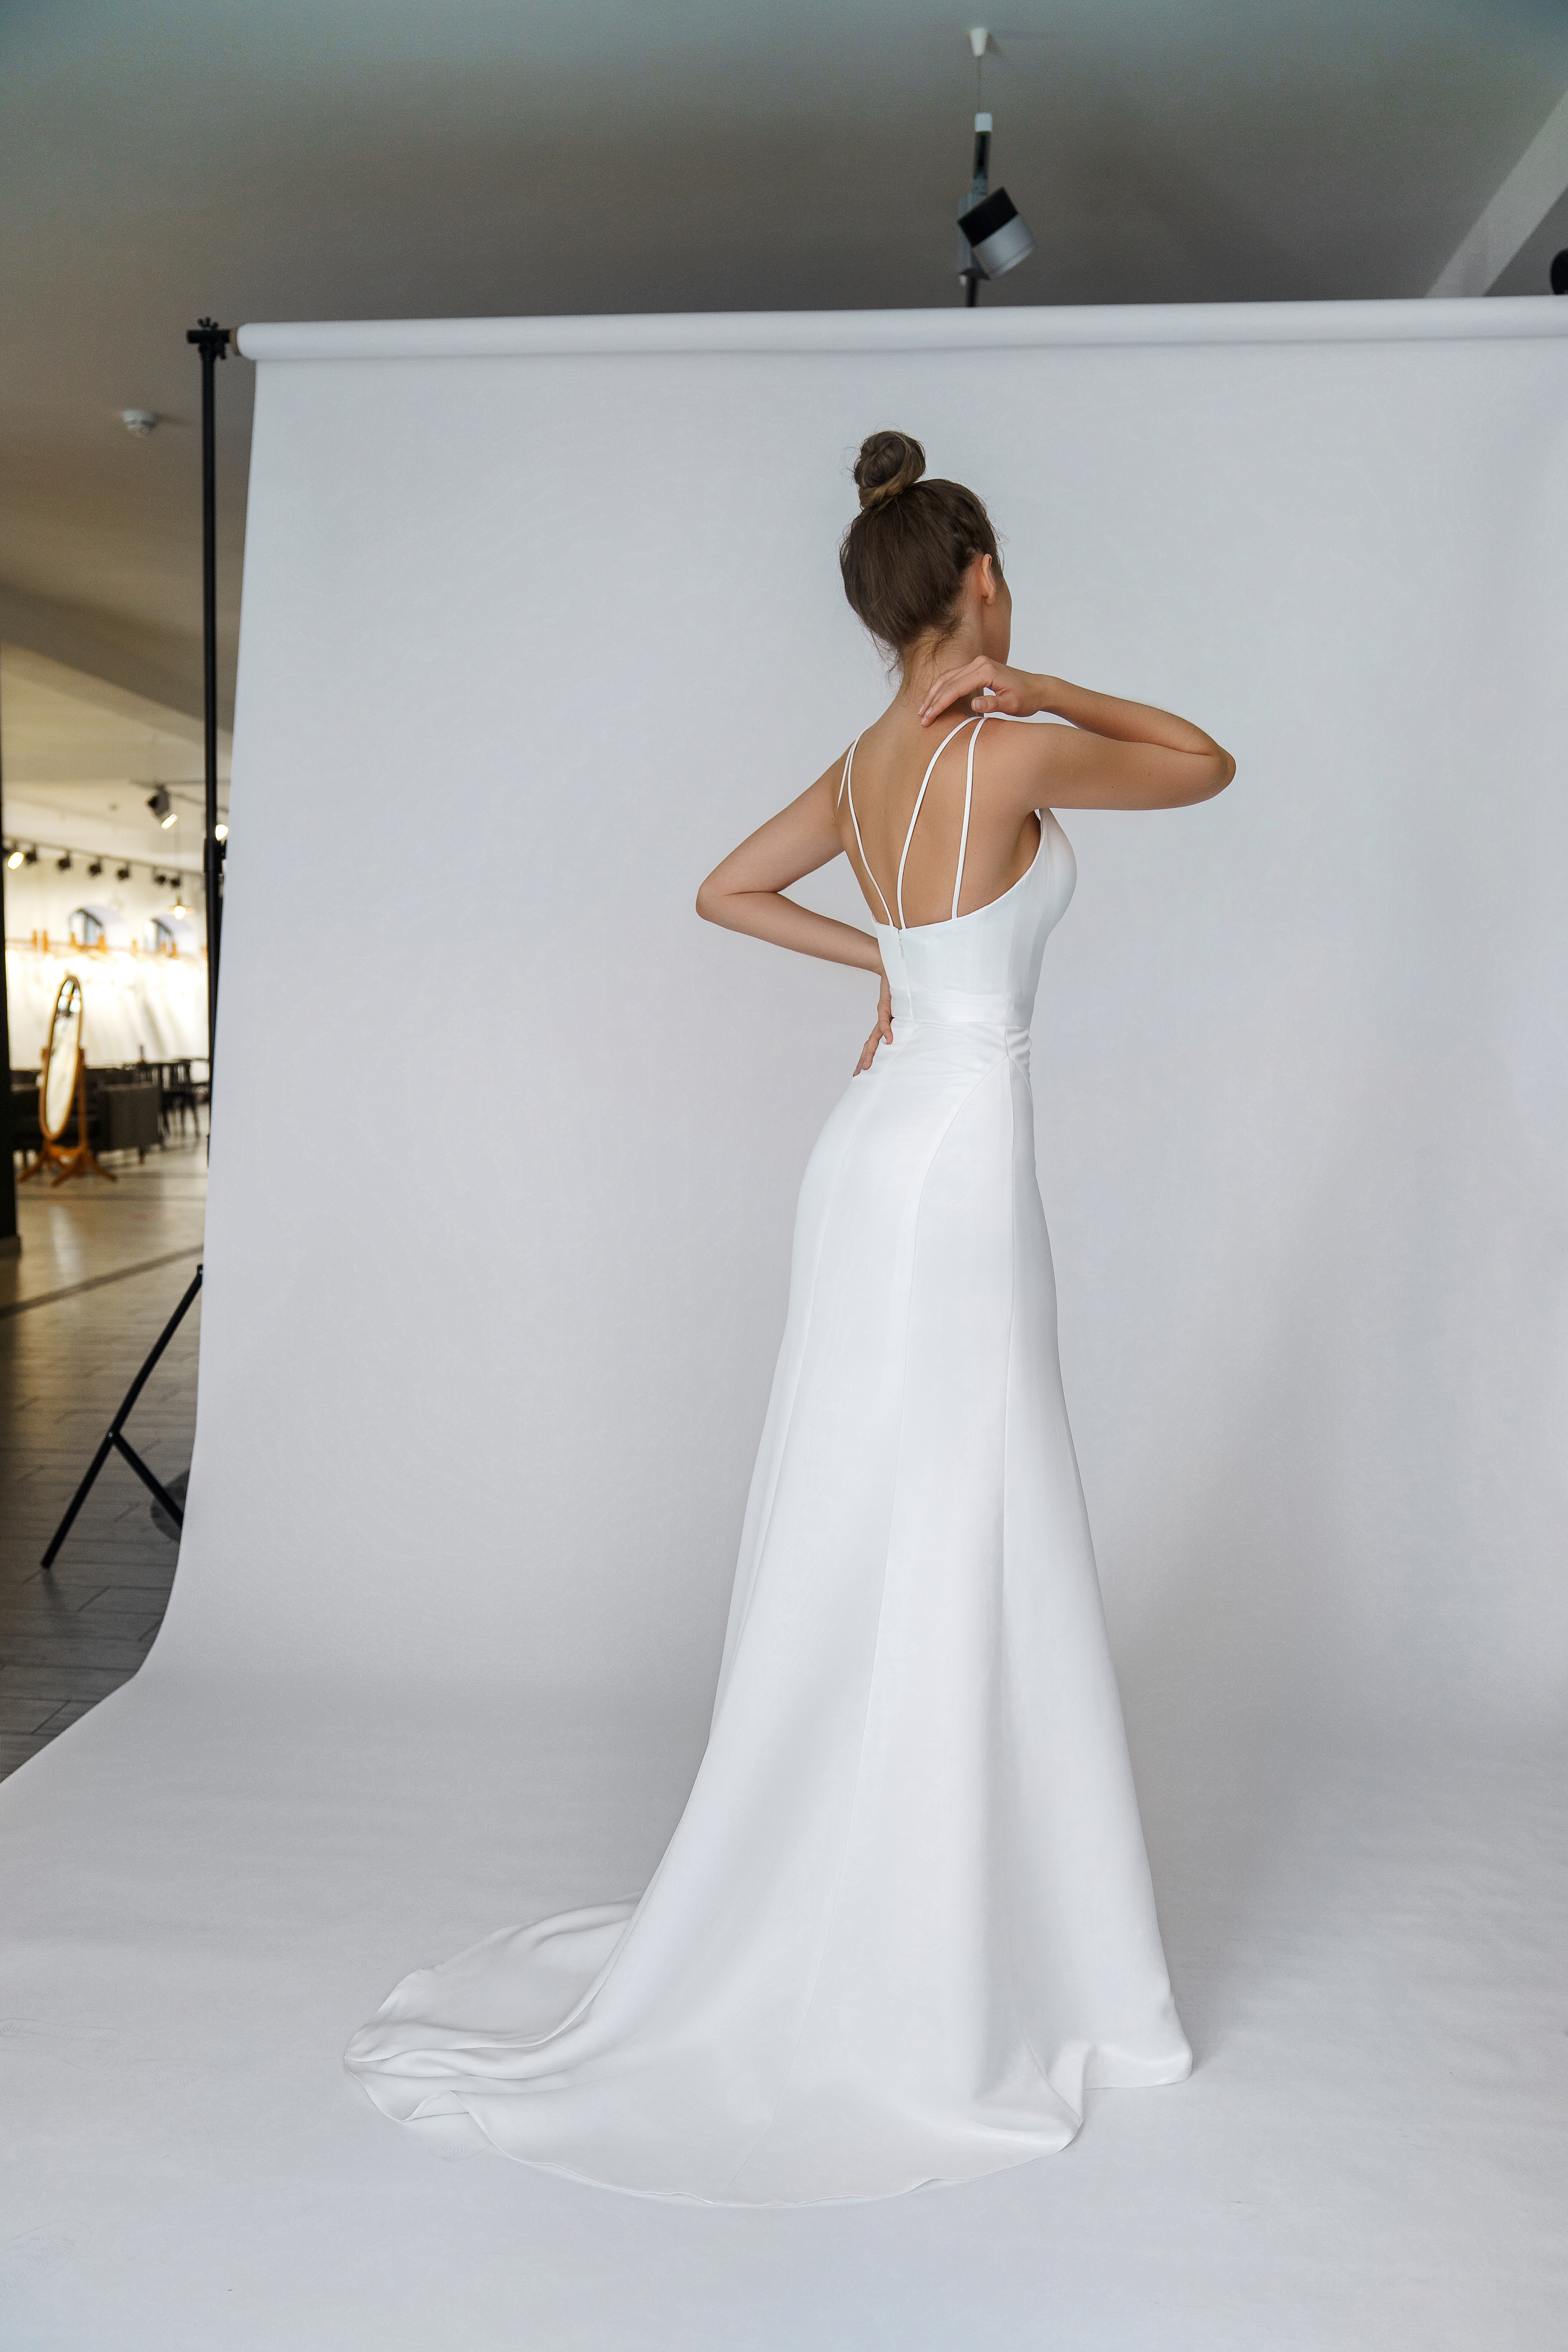 Свадебное платье «Одди» Марта — купить в Казани платье Ксара из коллекции 2021 года